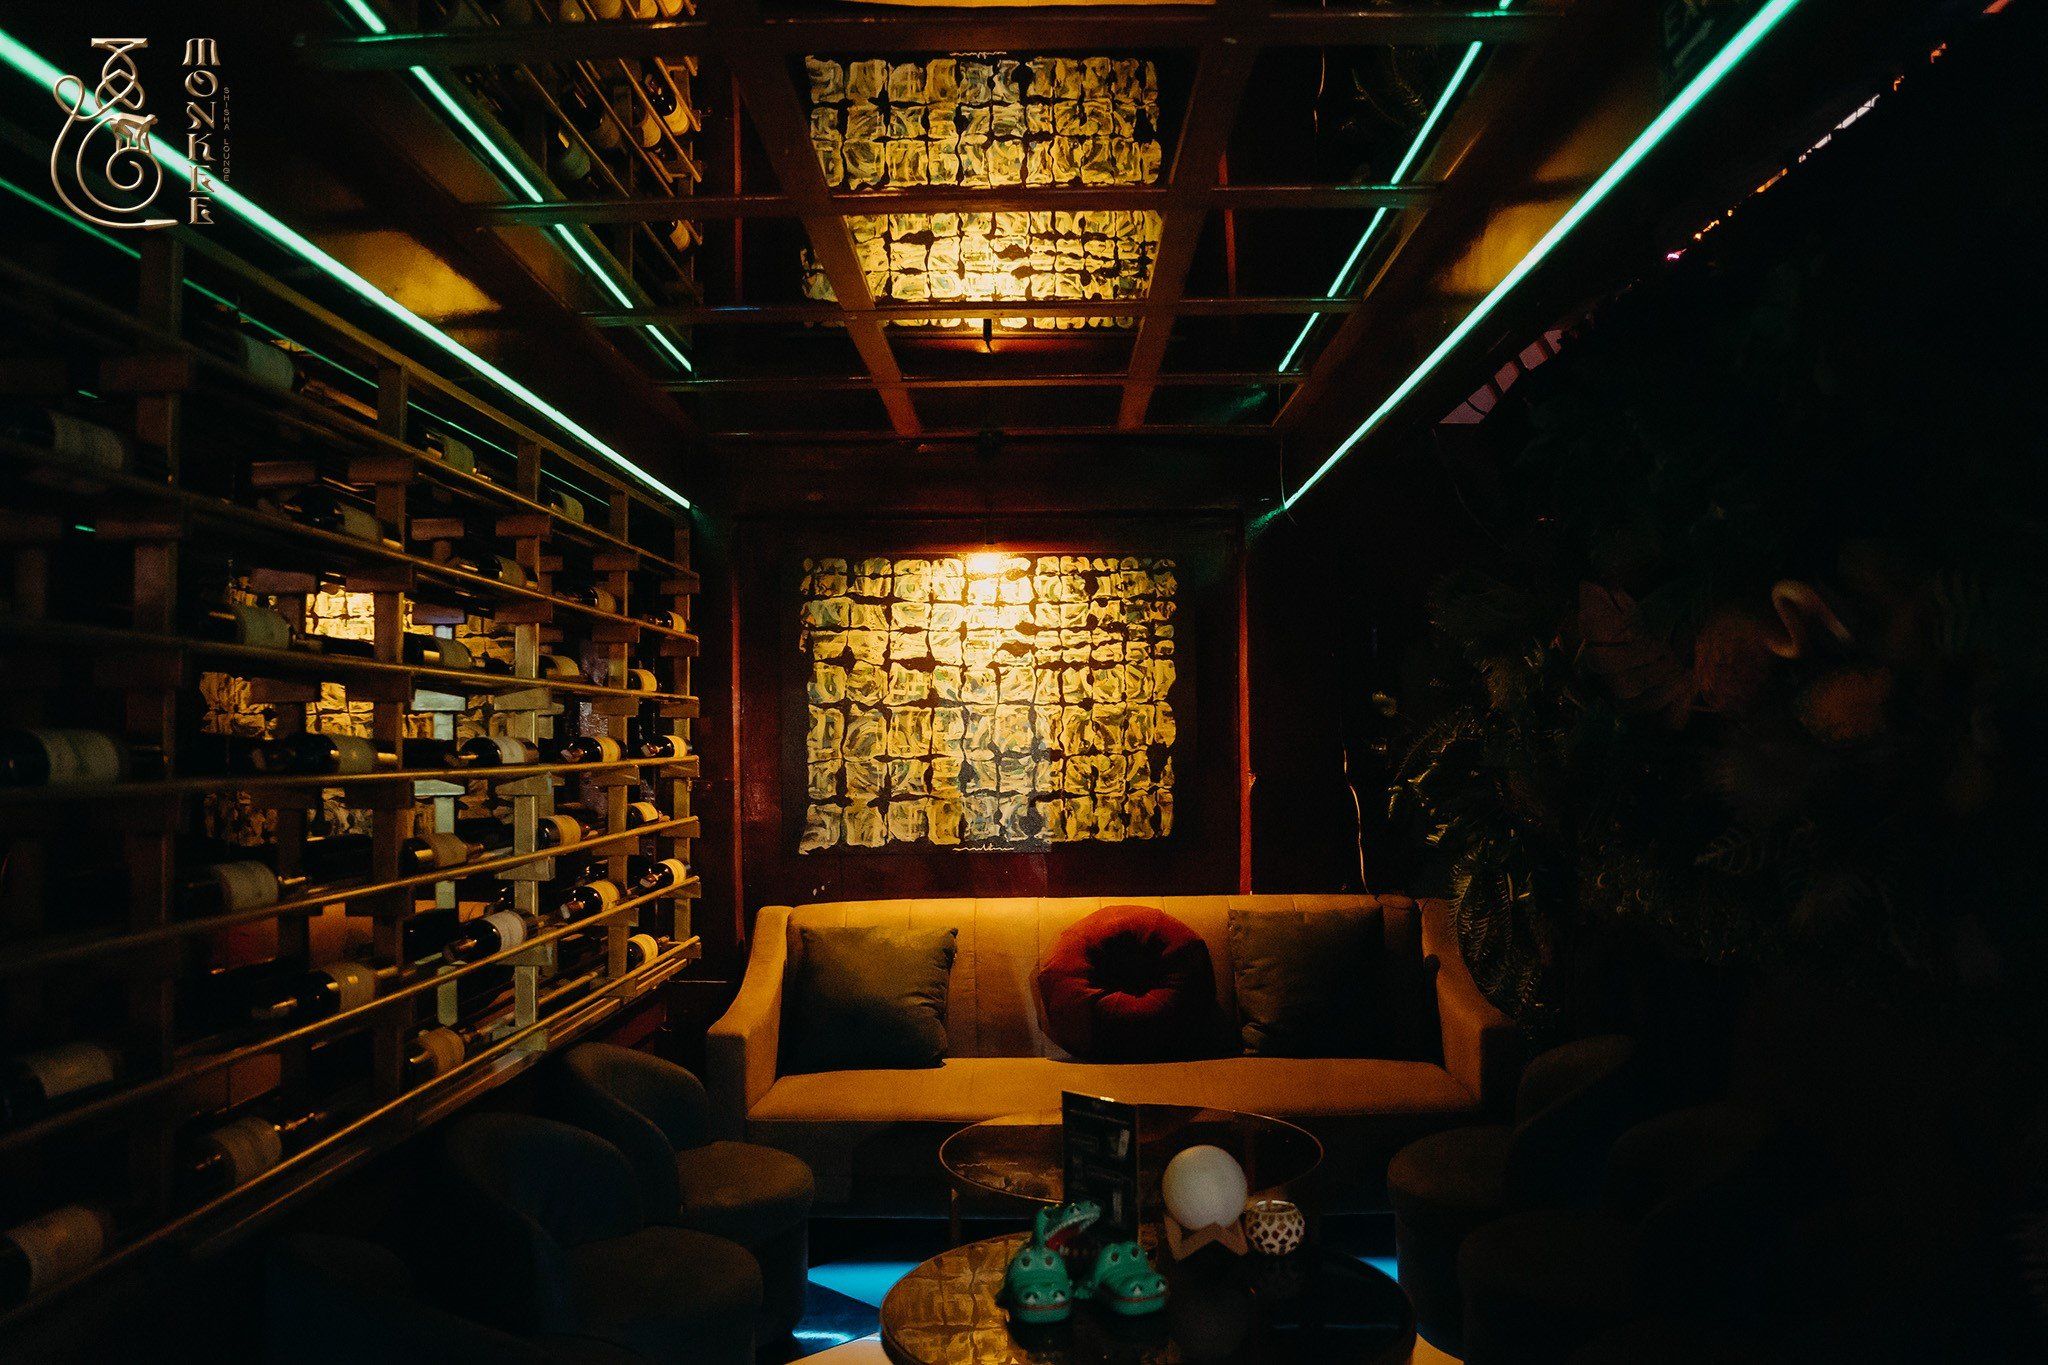 Monkee Lounge - 45 Trần Hưng Đạo